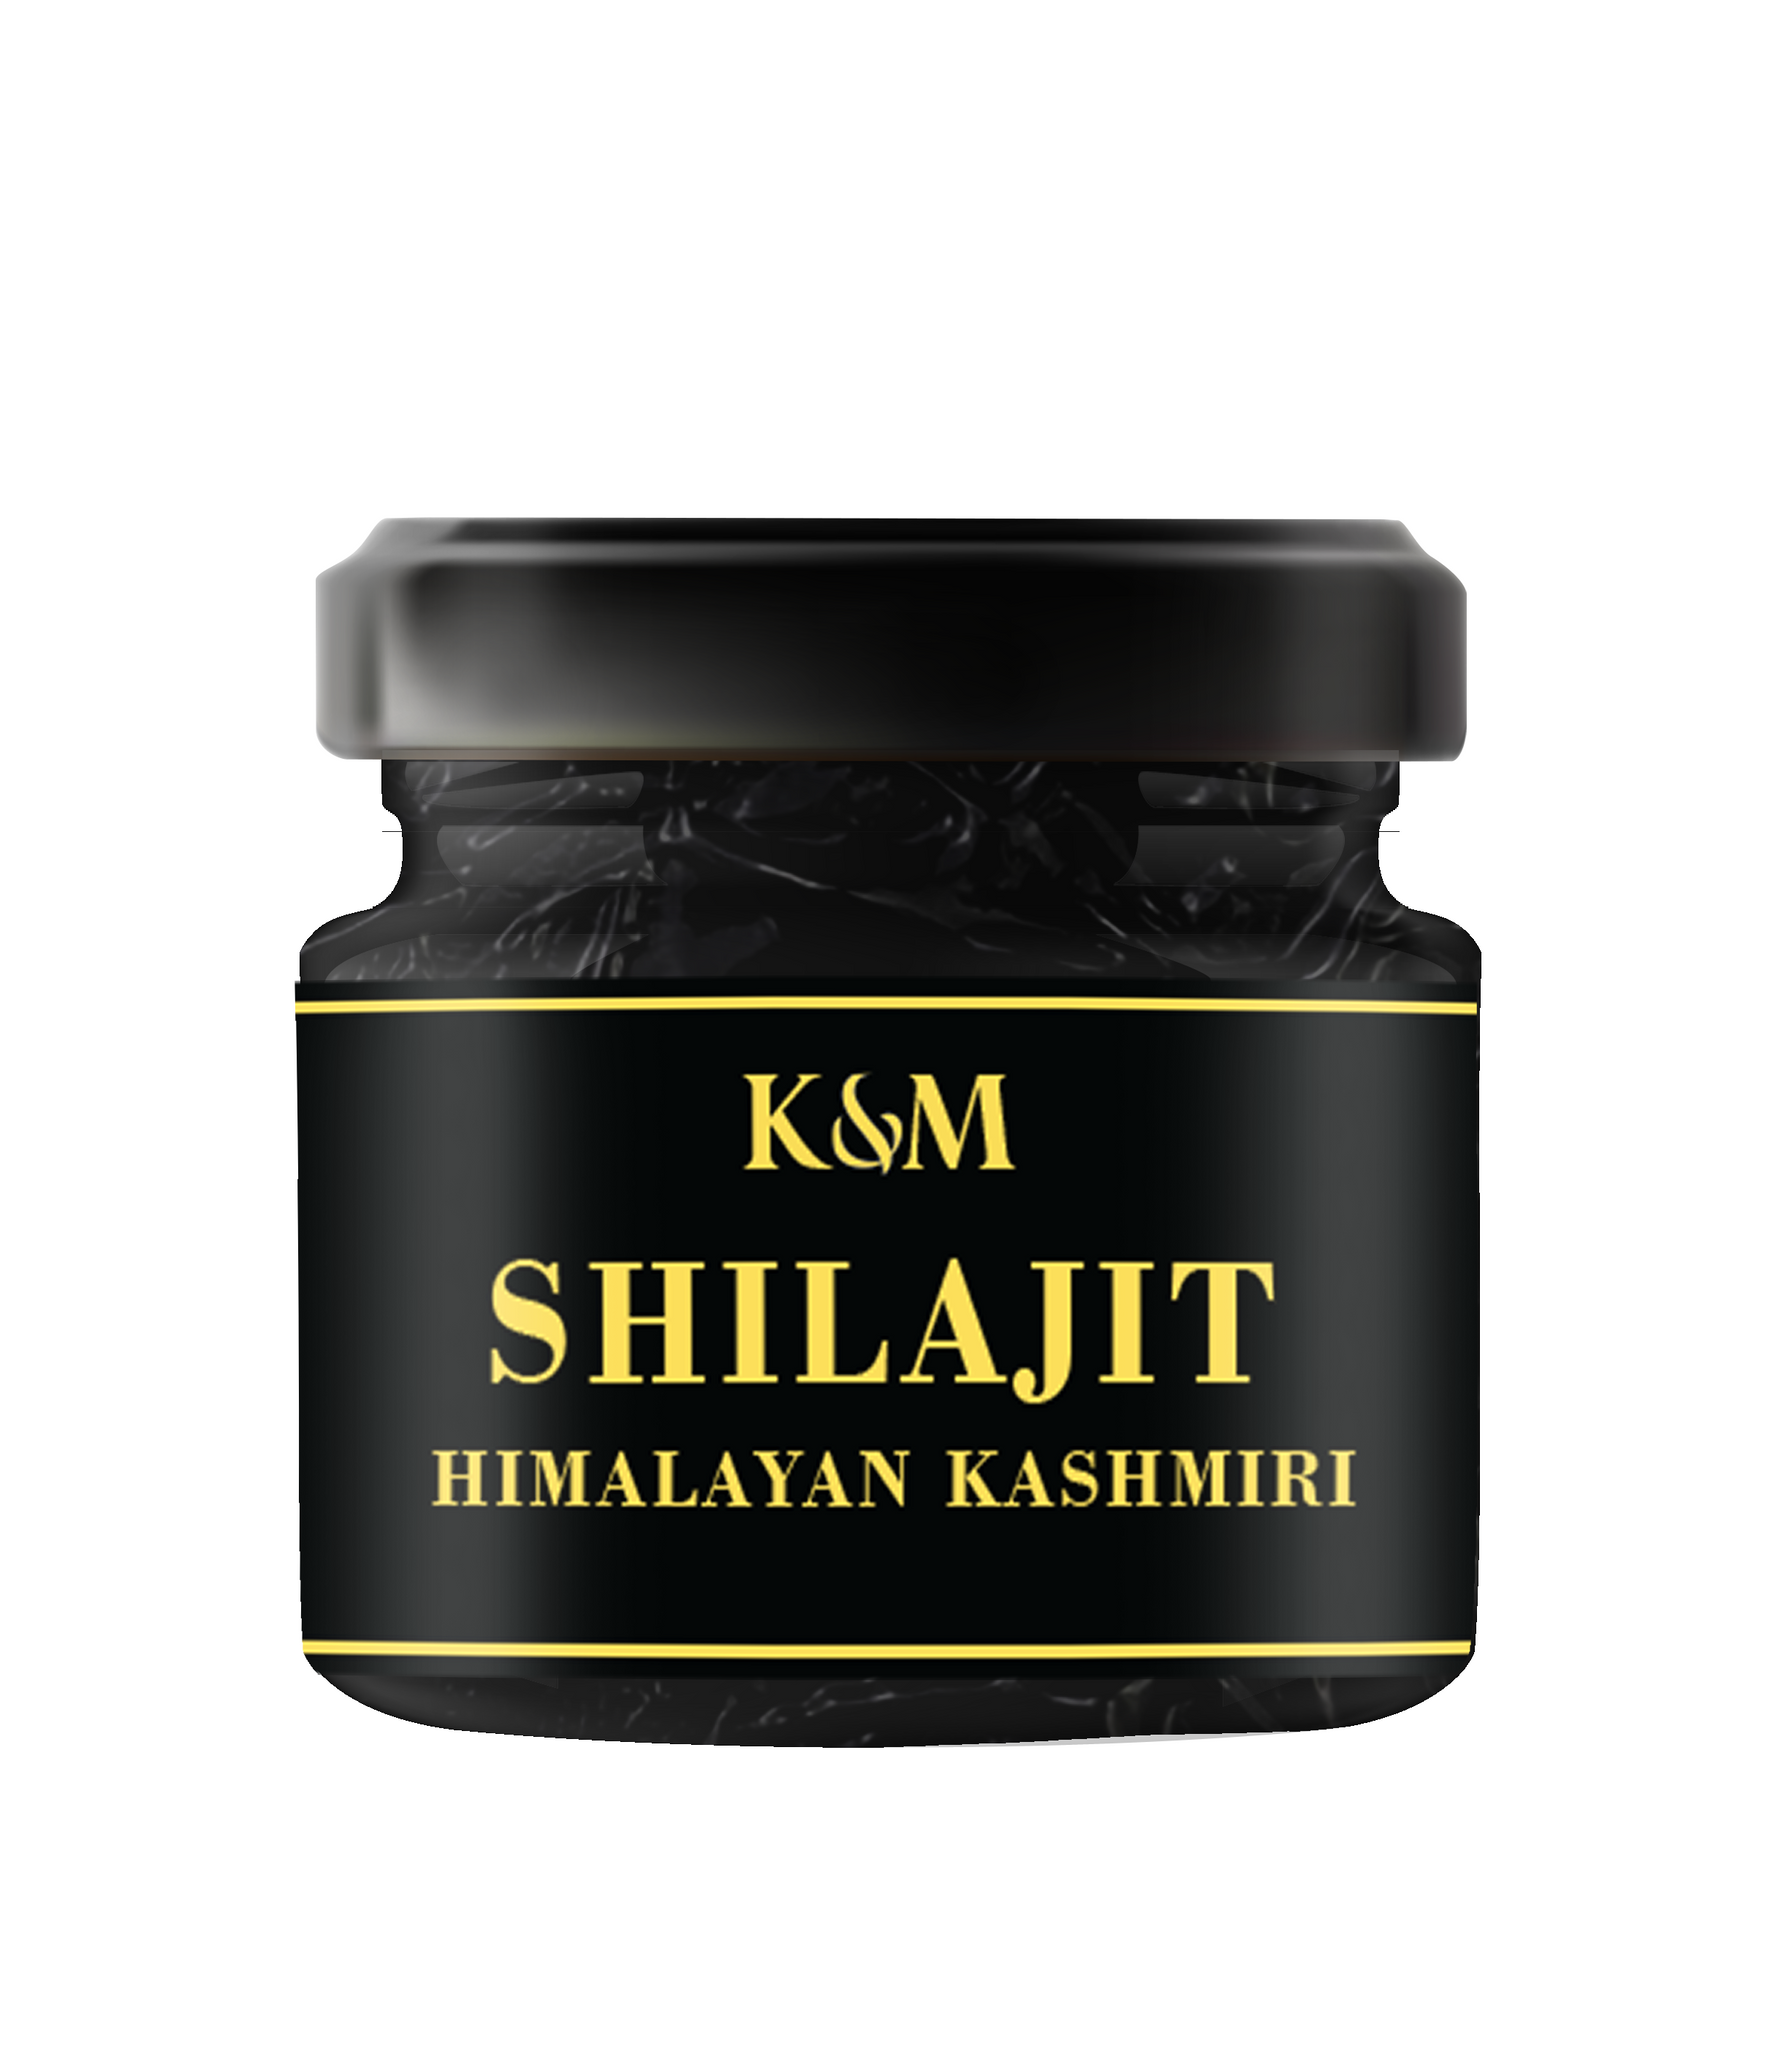 K&M Pure Himalayan Kashmiri Shilajit